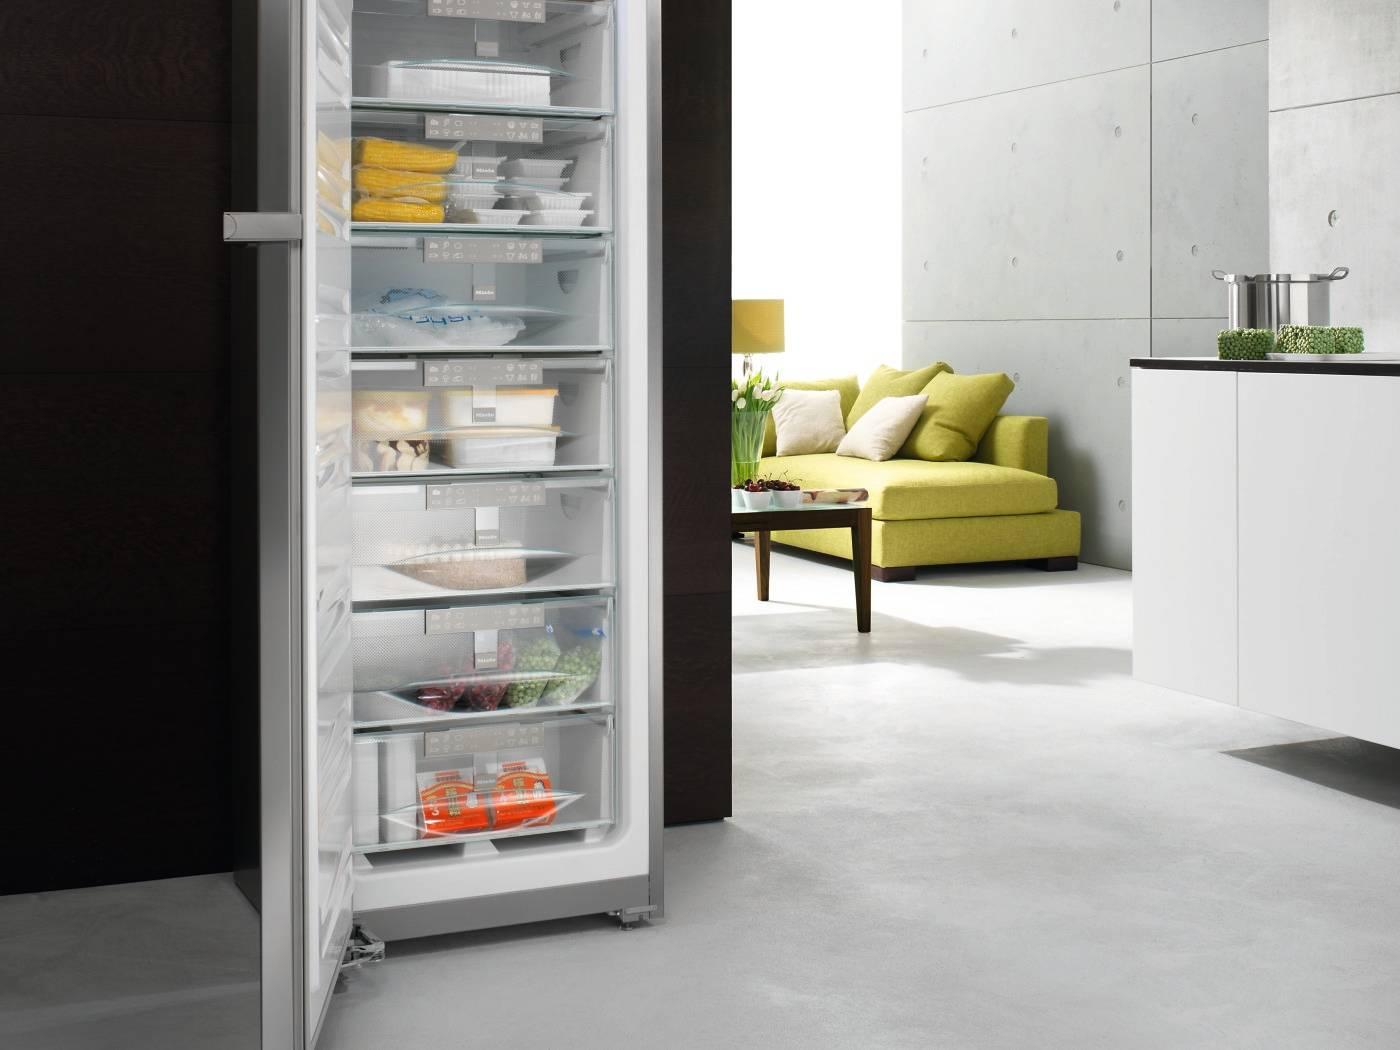 Самые надежные и качественные холодильники. Холодильник Miele k 14827 SD. Морозильник Miele FN 14827 sed. Самый крутой холодильник для квартиры. Холодильник Miele в интерьере.